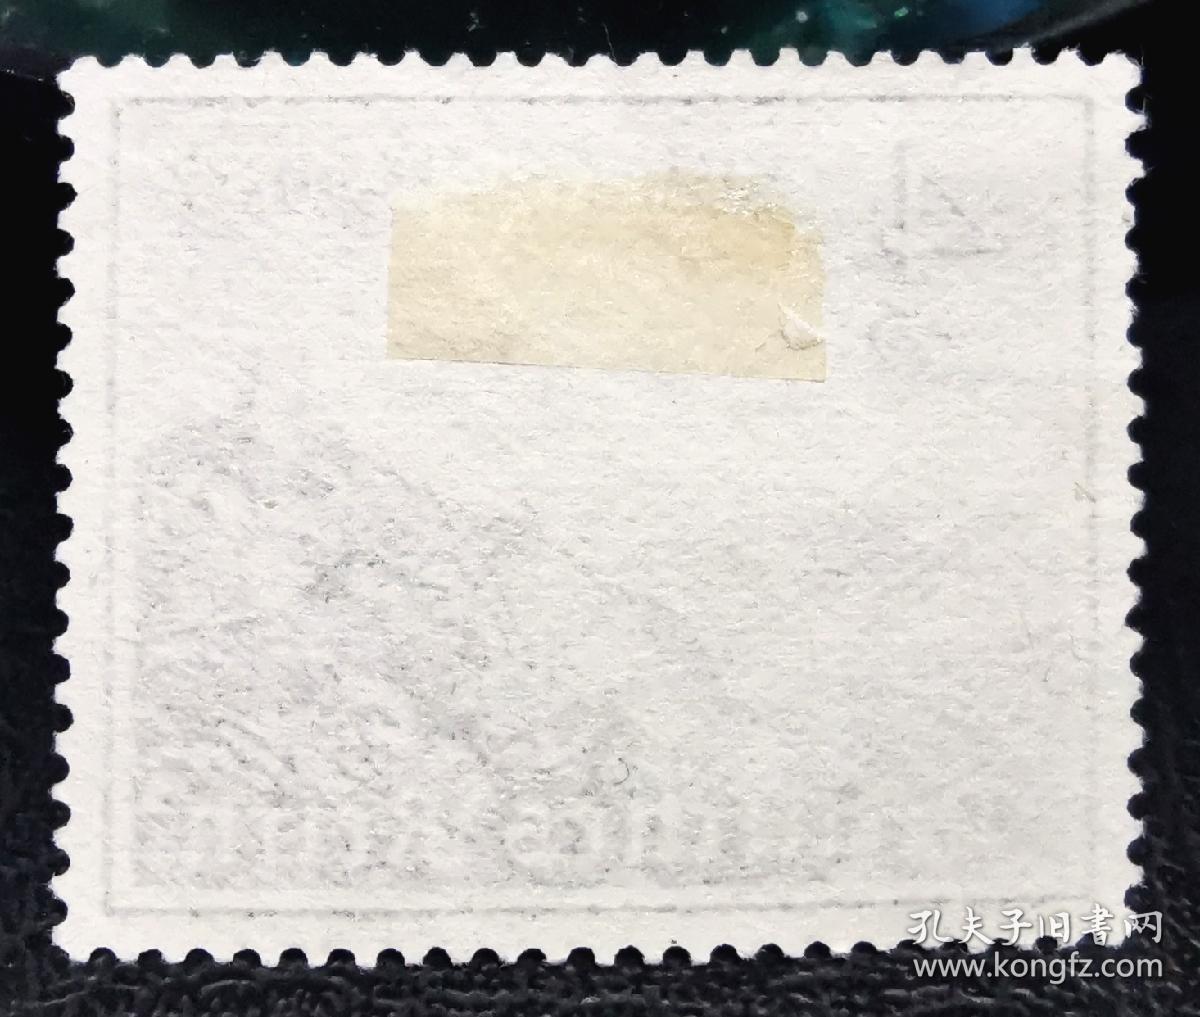 234#德国1939年邮票 莱茵河畔的德拉琴费尔斯 建筑风光 历史遗迹 1枚上品信销 2015斯科特目录2美元